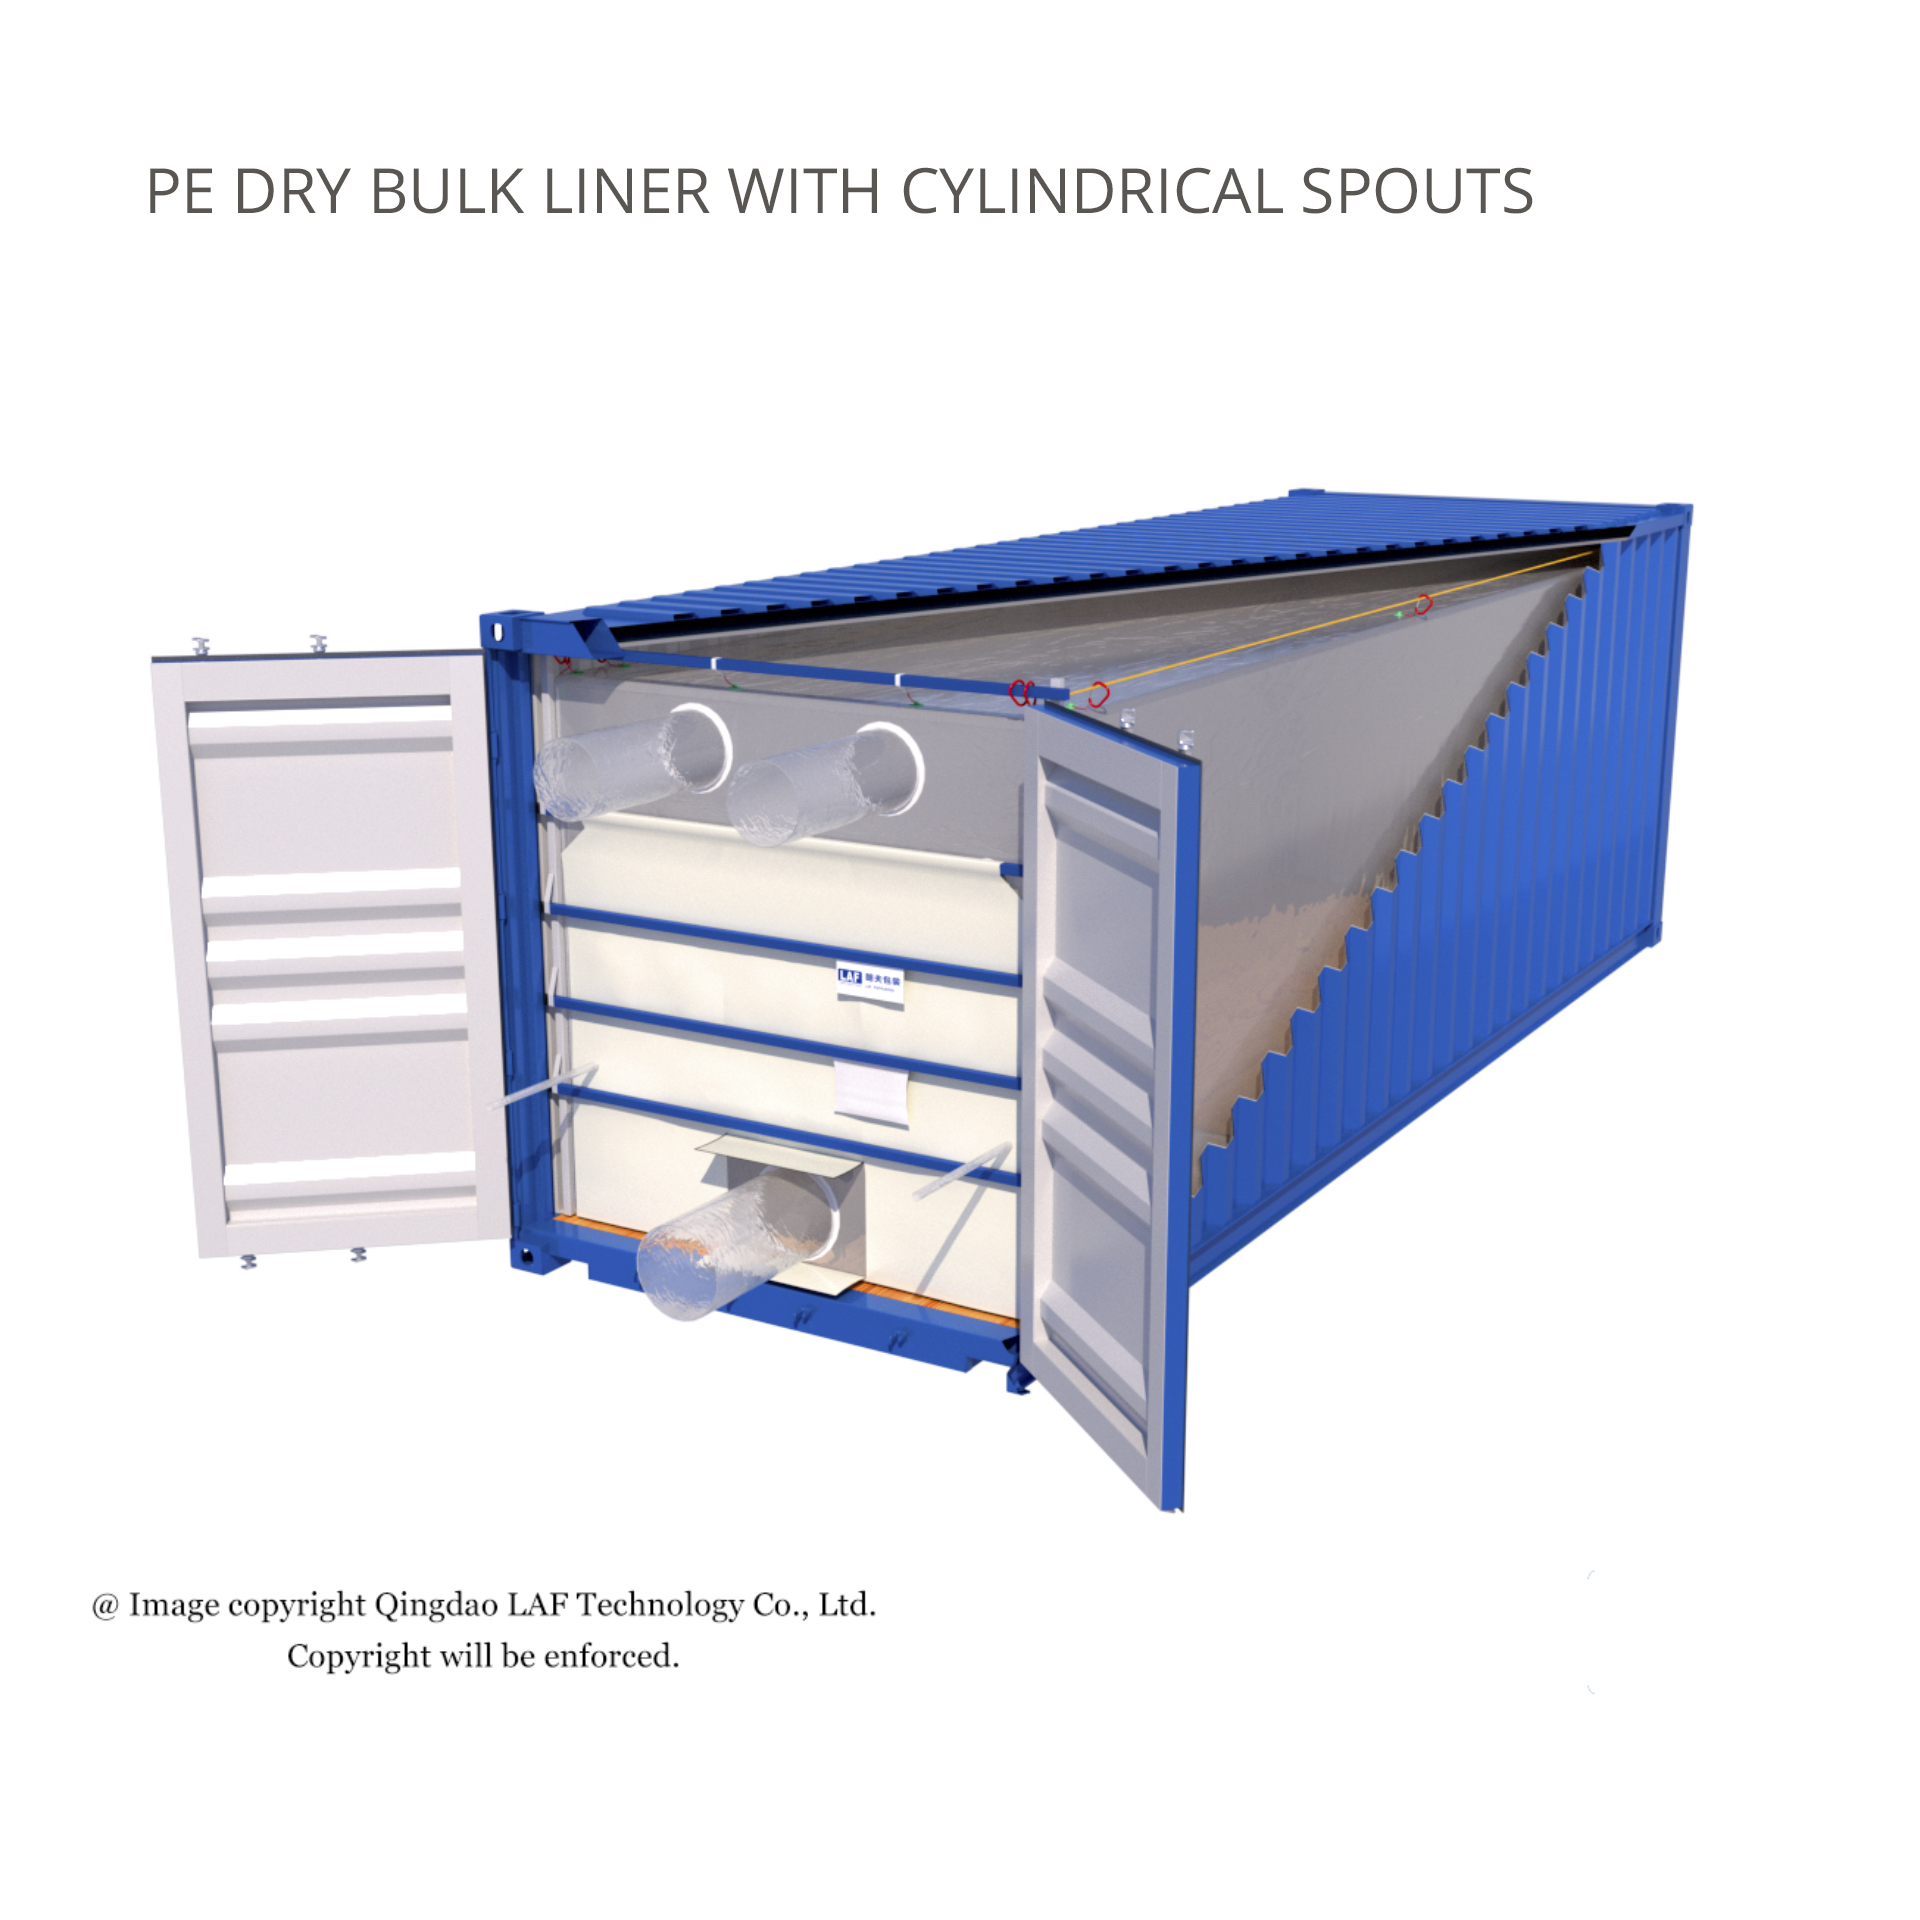  Dry Bulk Liner for Non-Hazardous Chemicals